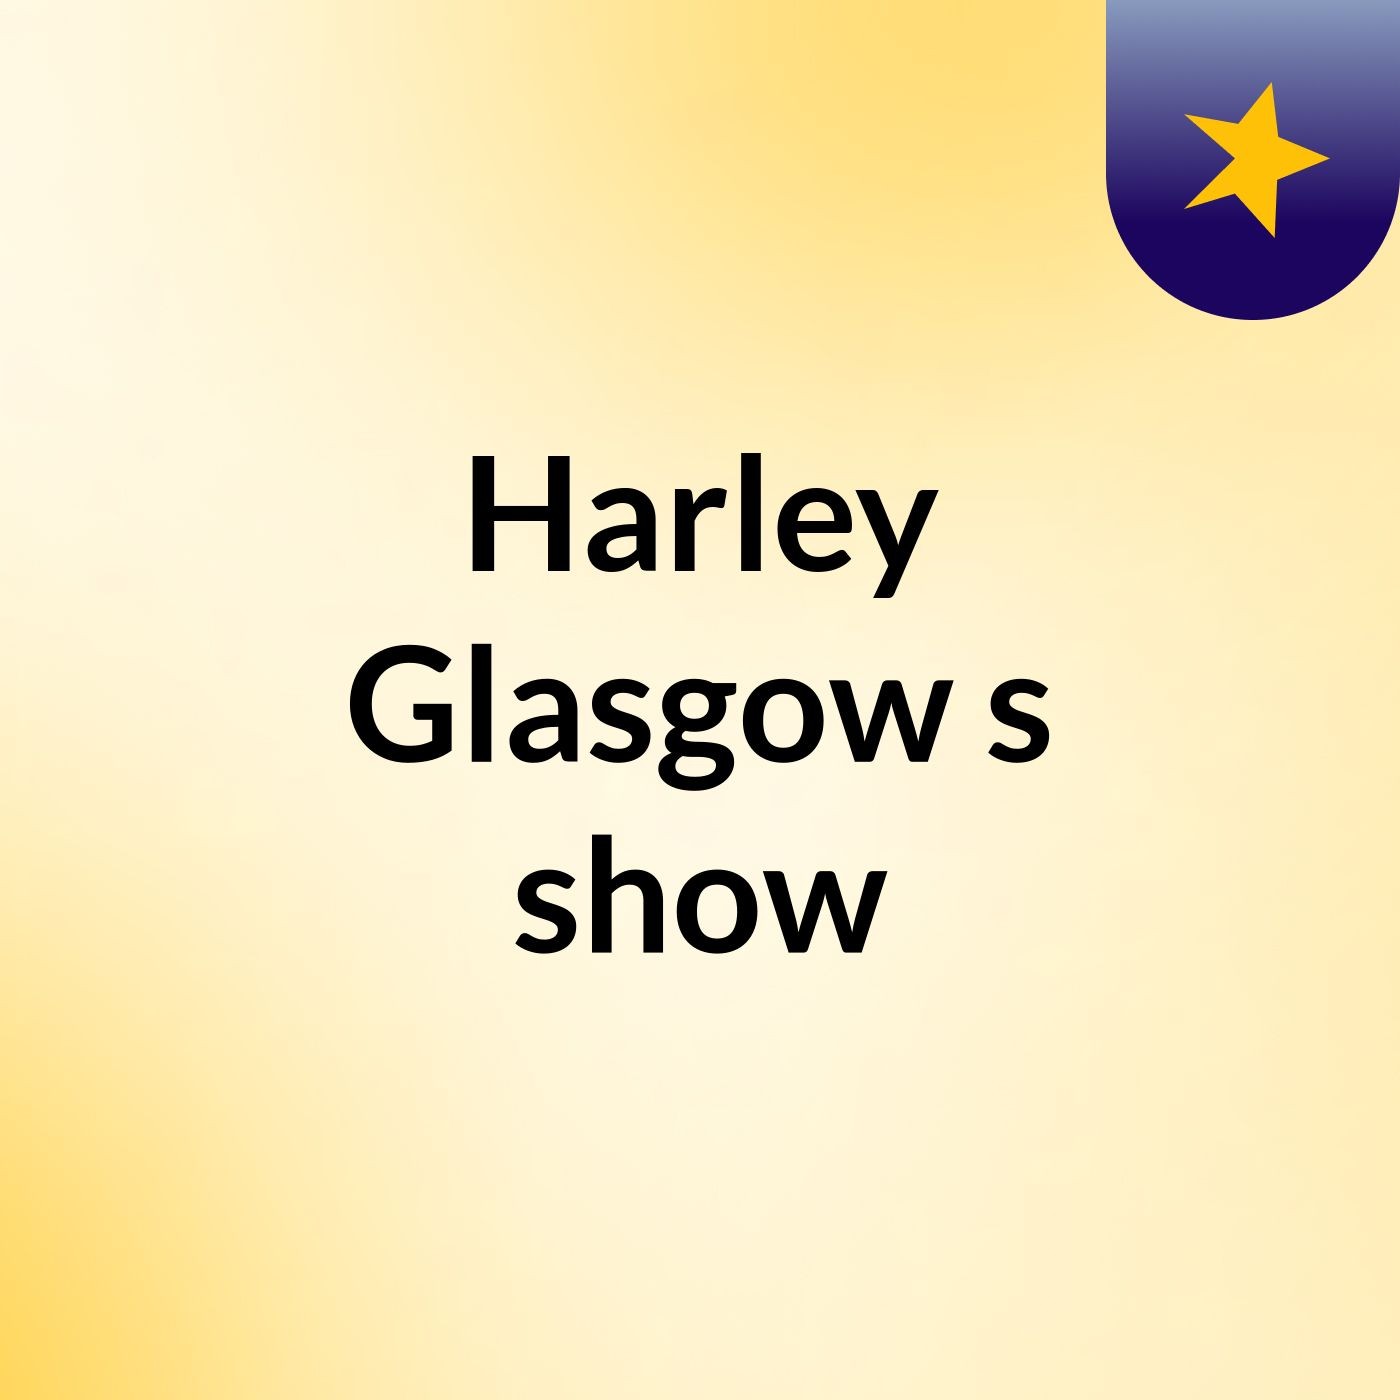 Harley Glasgow's show